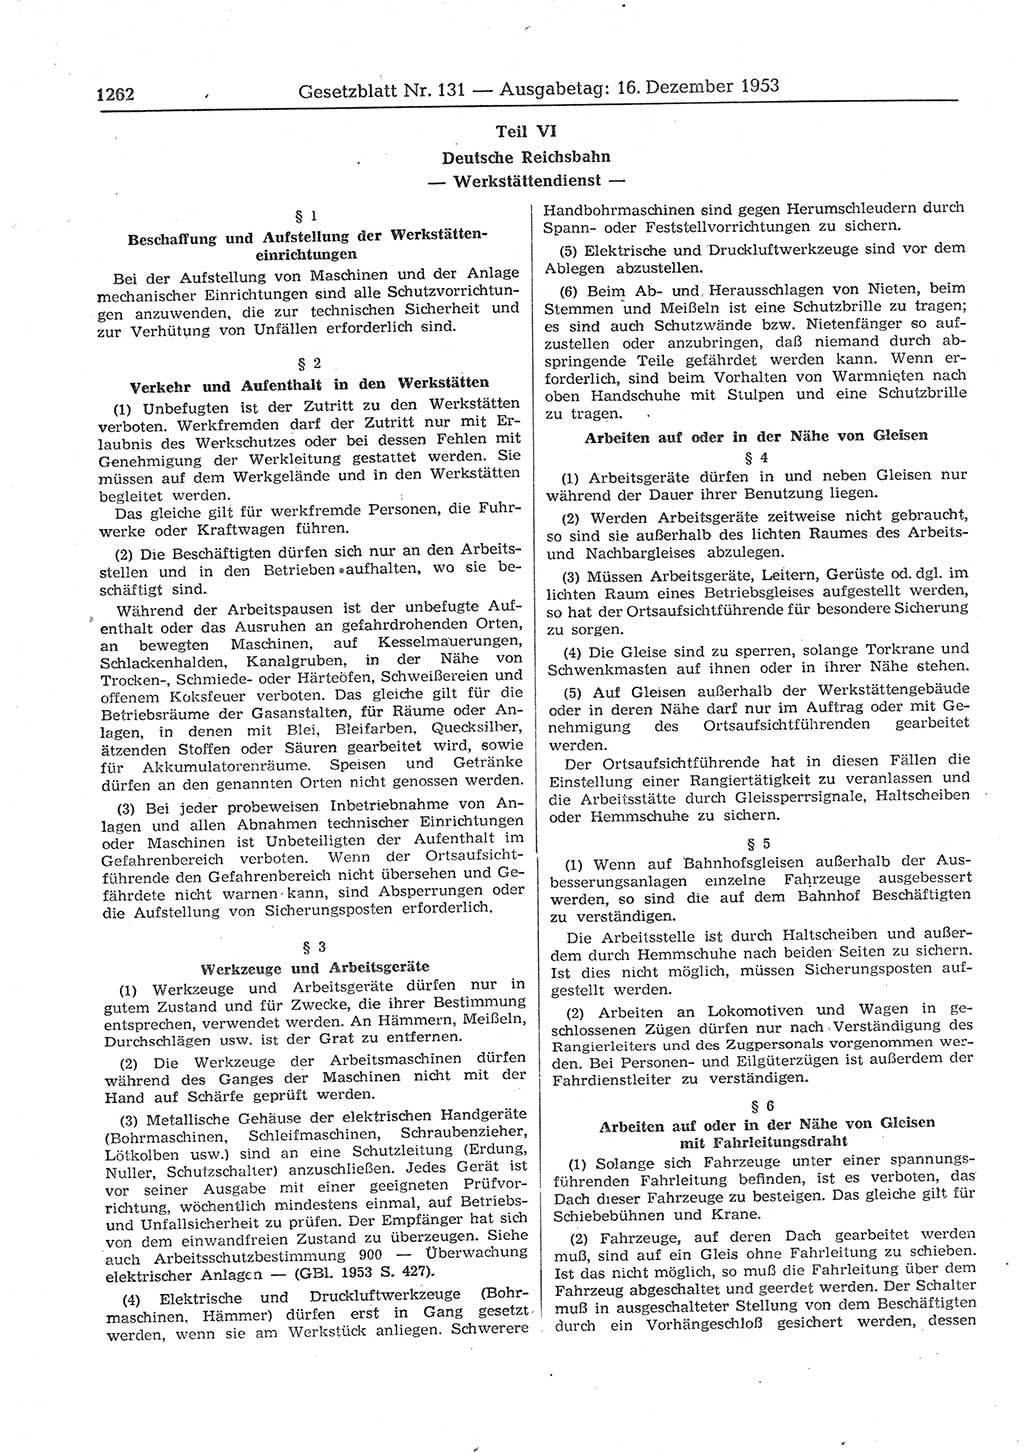 Gesetzblatt (GBl.) der Deutschen Demokratischen Republik (DDR) 1953, Seite 1262 (GBl. DDR 1953, S. 1262)